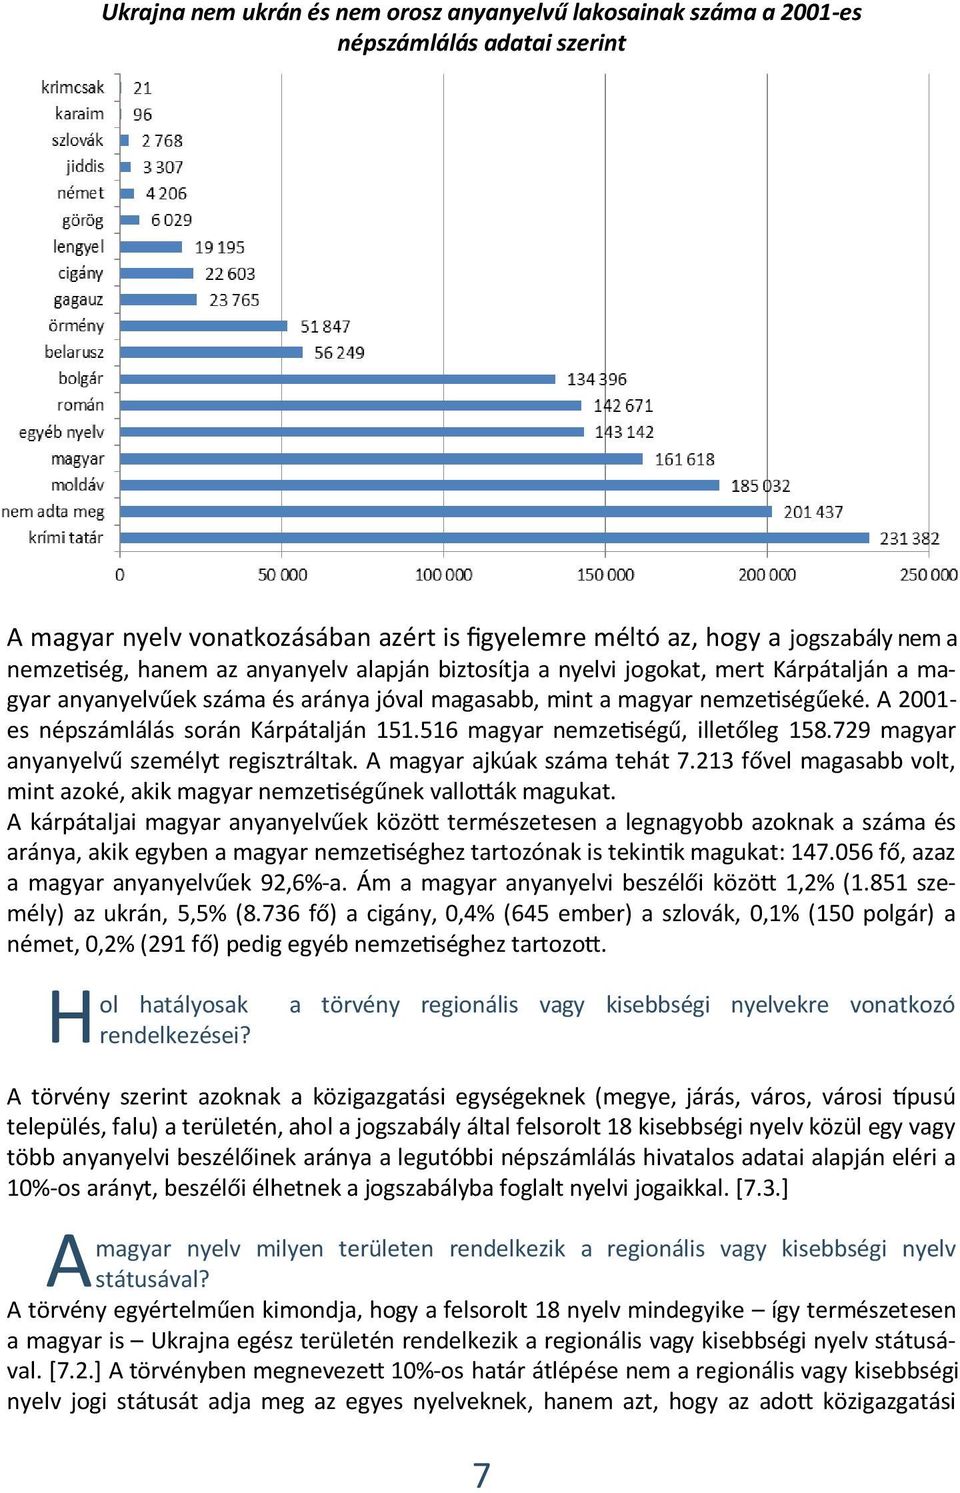 516 magyar nemzetiségű, illetőleg 158.729 magyar anyanyelvű személyt regisztráltak. A magyar ajkúak száma tehát 7.213 fővel magasabb volt, mint azoké, akik magyar nemzetiségűnek vallották magukat.